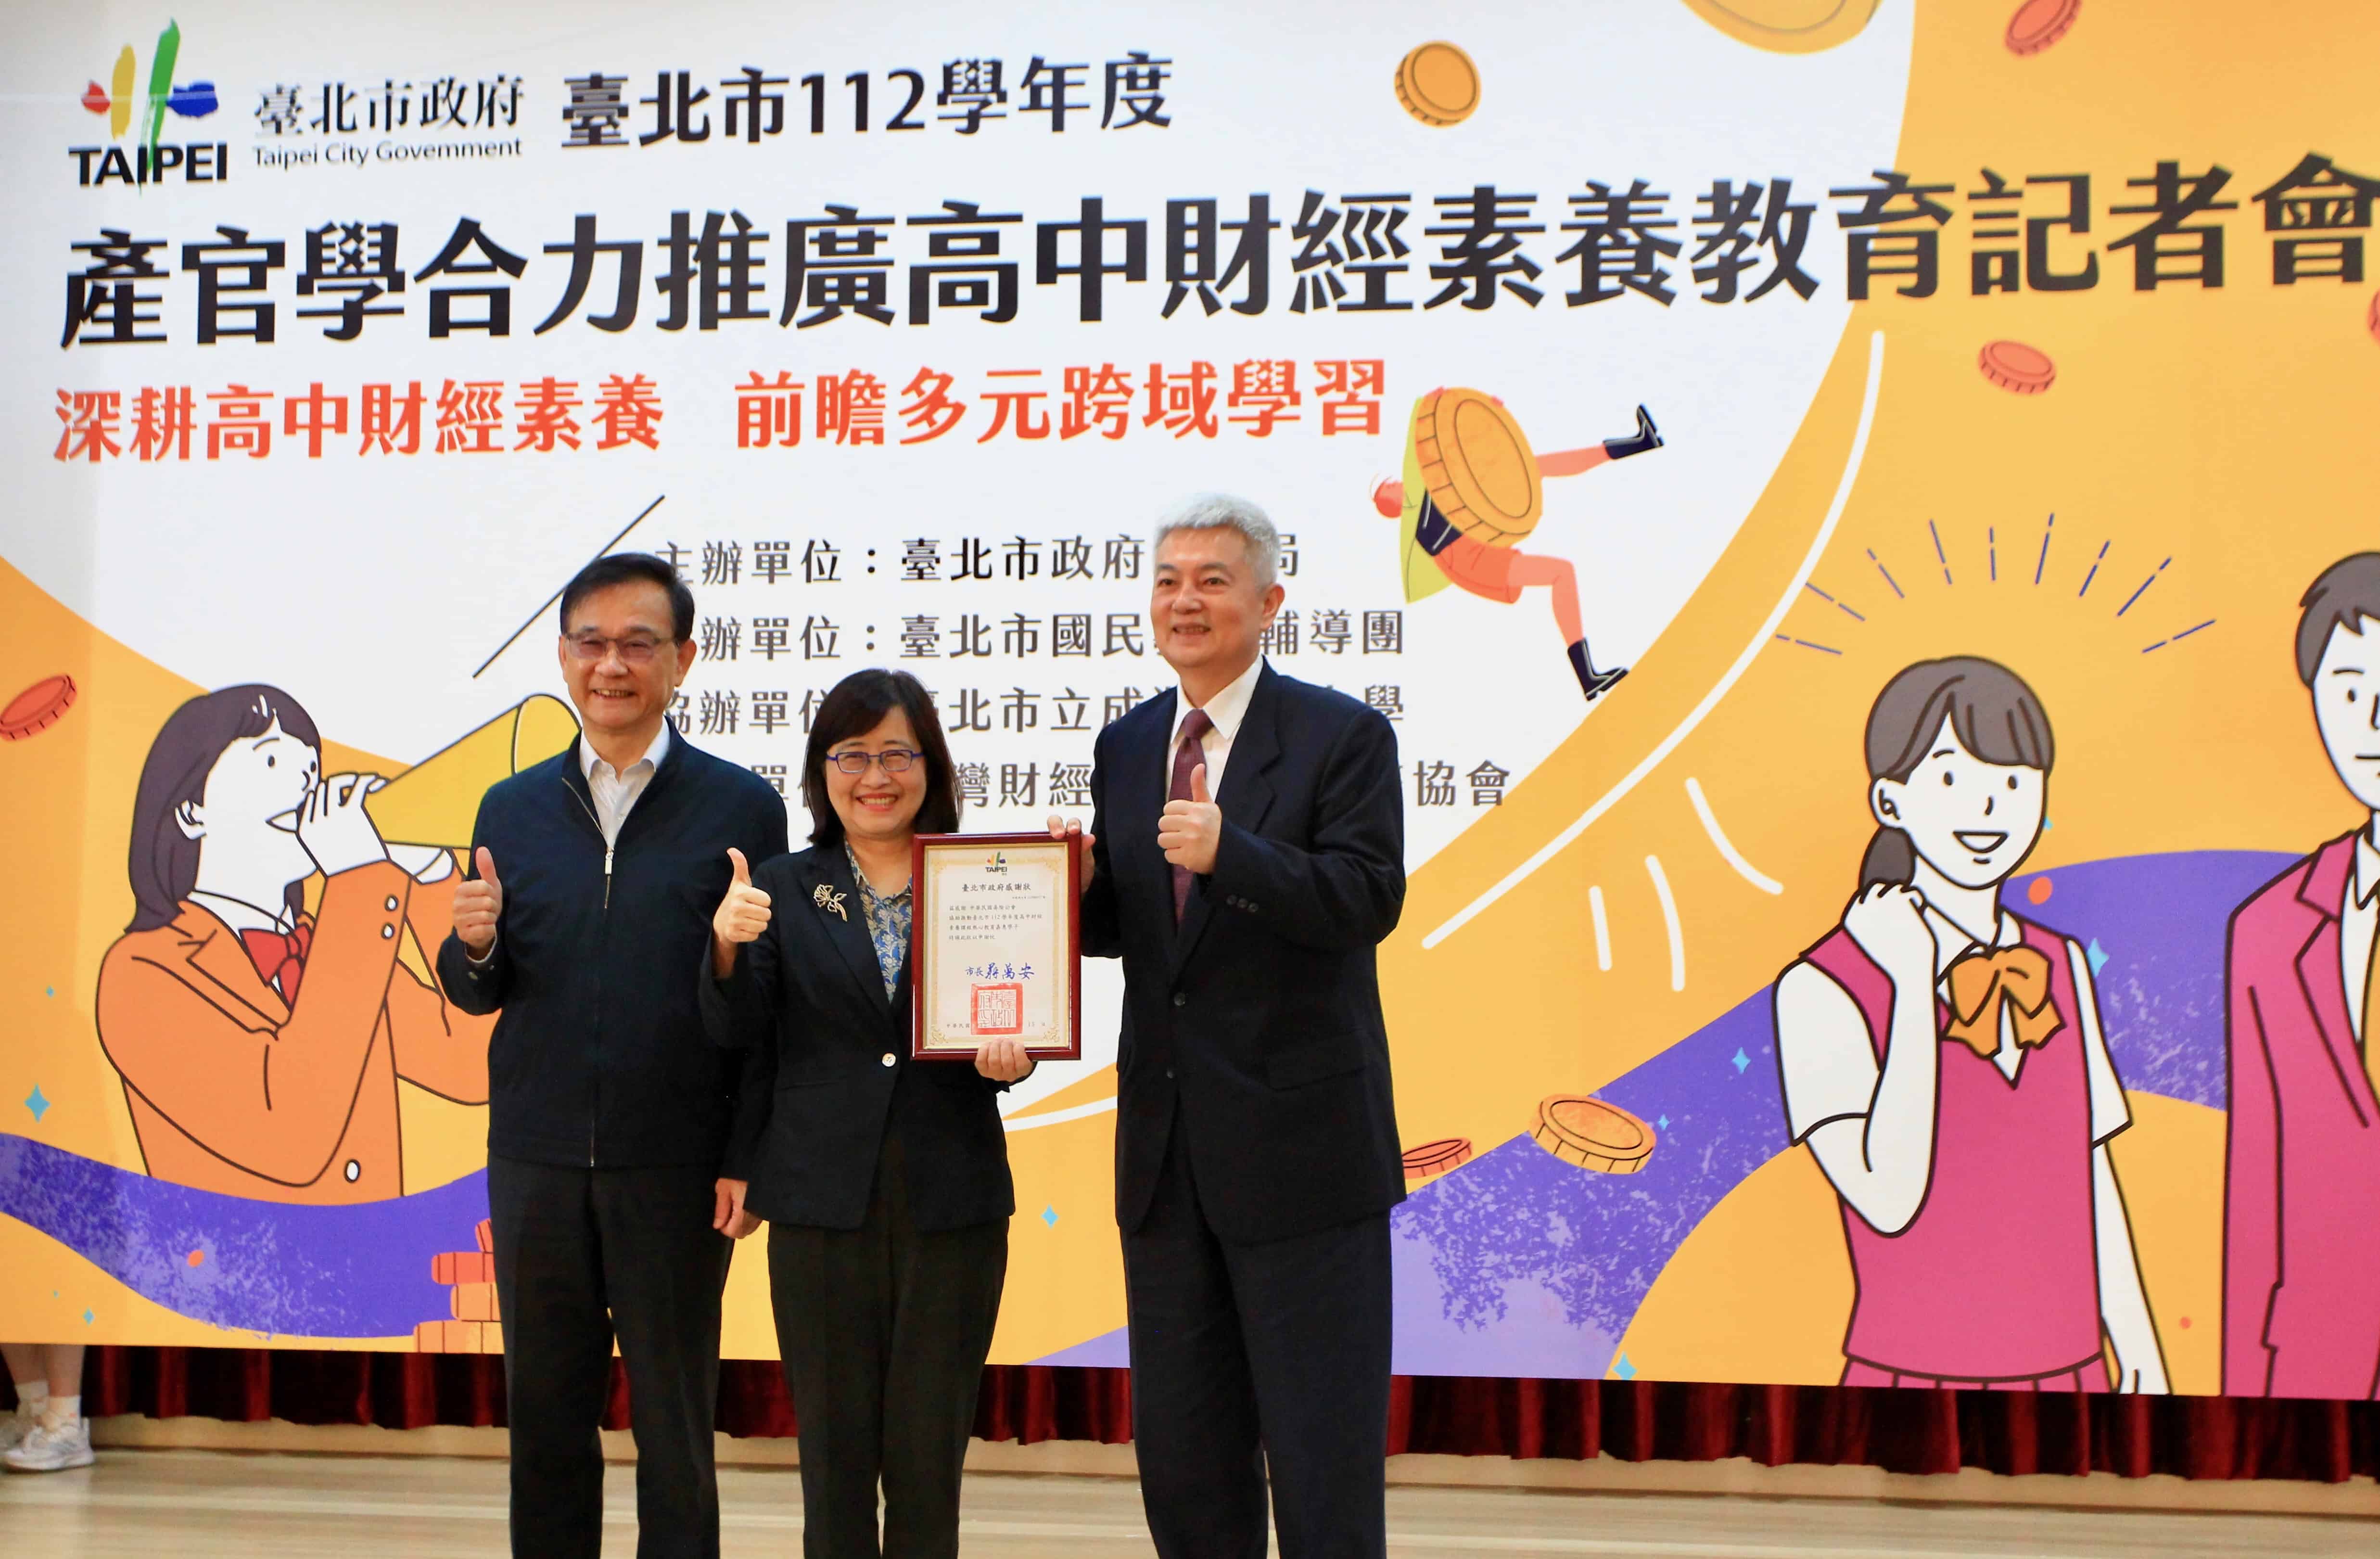 左起台北市教育局長湯志民、台北市副市長林奕華、壽險公會理事長陳慧遊的合照